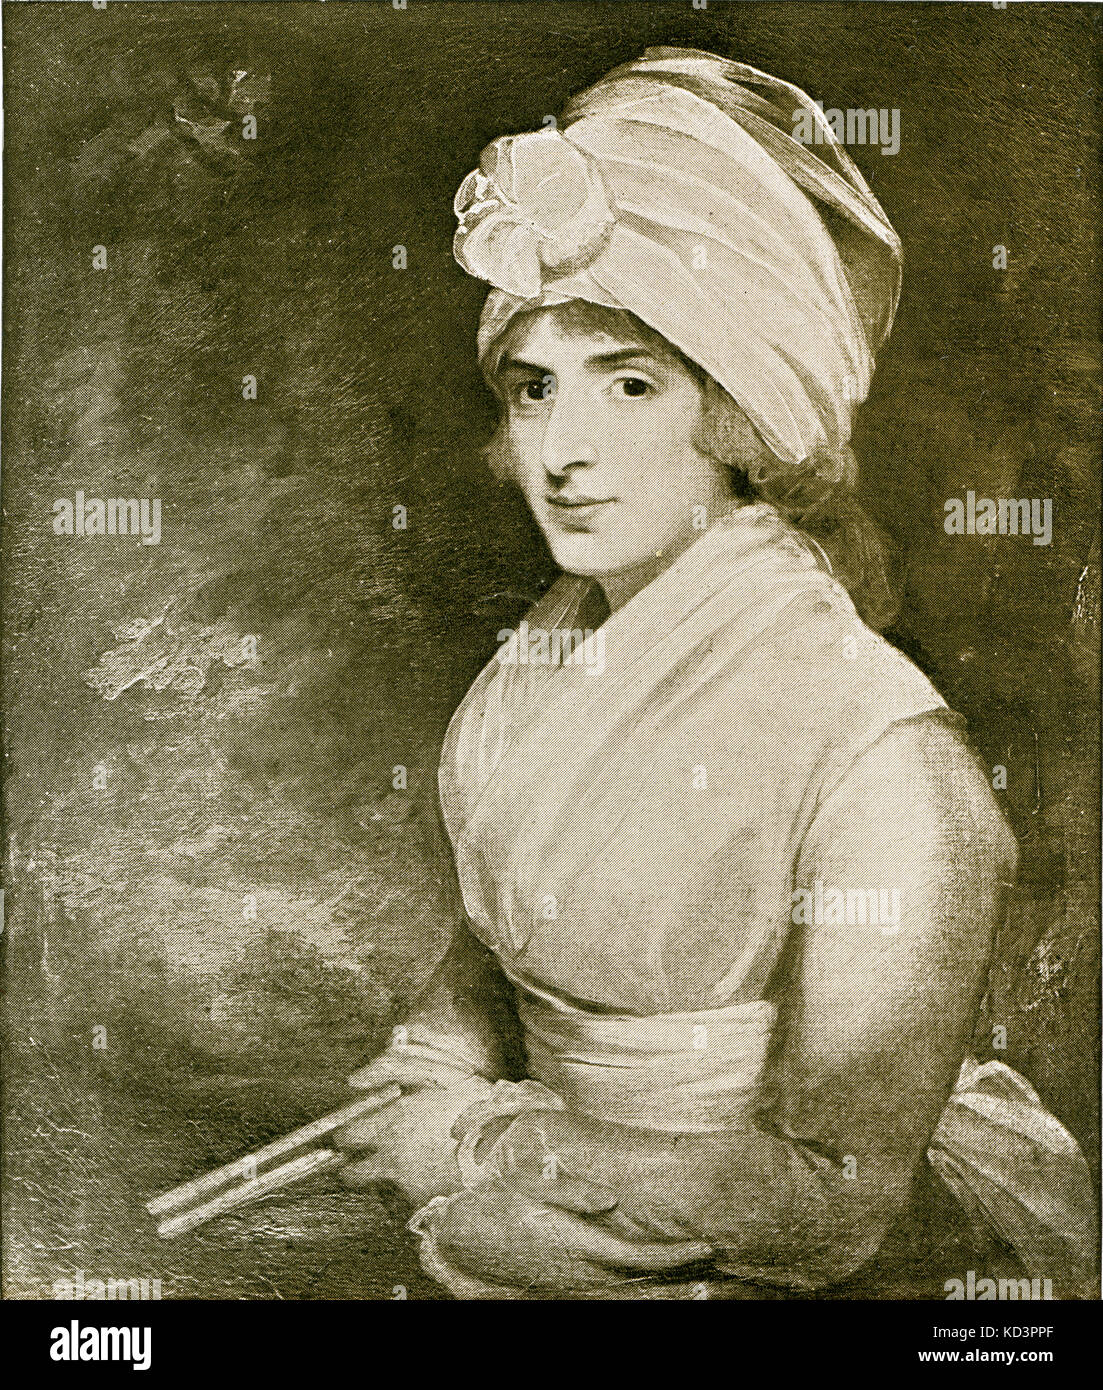 Sarah Siddons (née Kemble) après la peinture de Gilbert Stuart , 1787. Portrait de l'actrice anglaise, 1755 - 1831. Célèbre pour jouer à Lady Macbeth. Banque D'Images